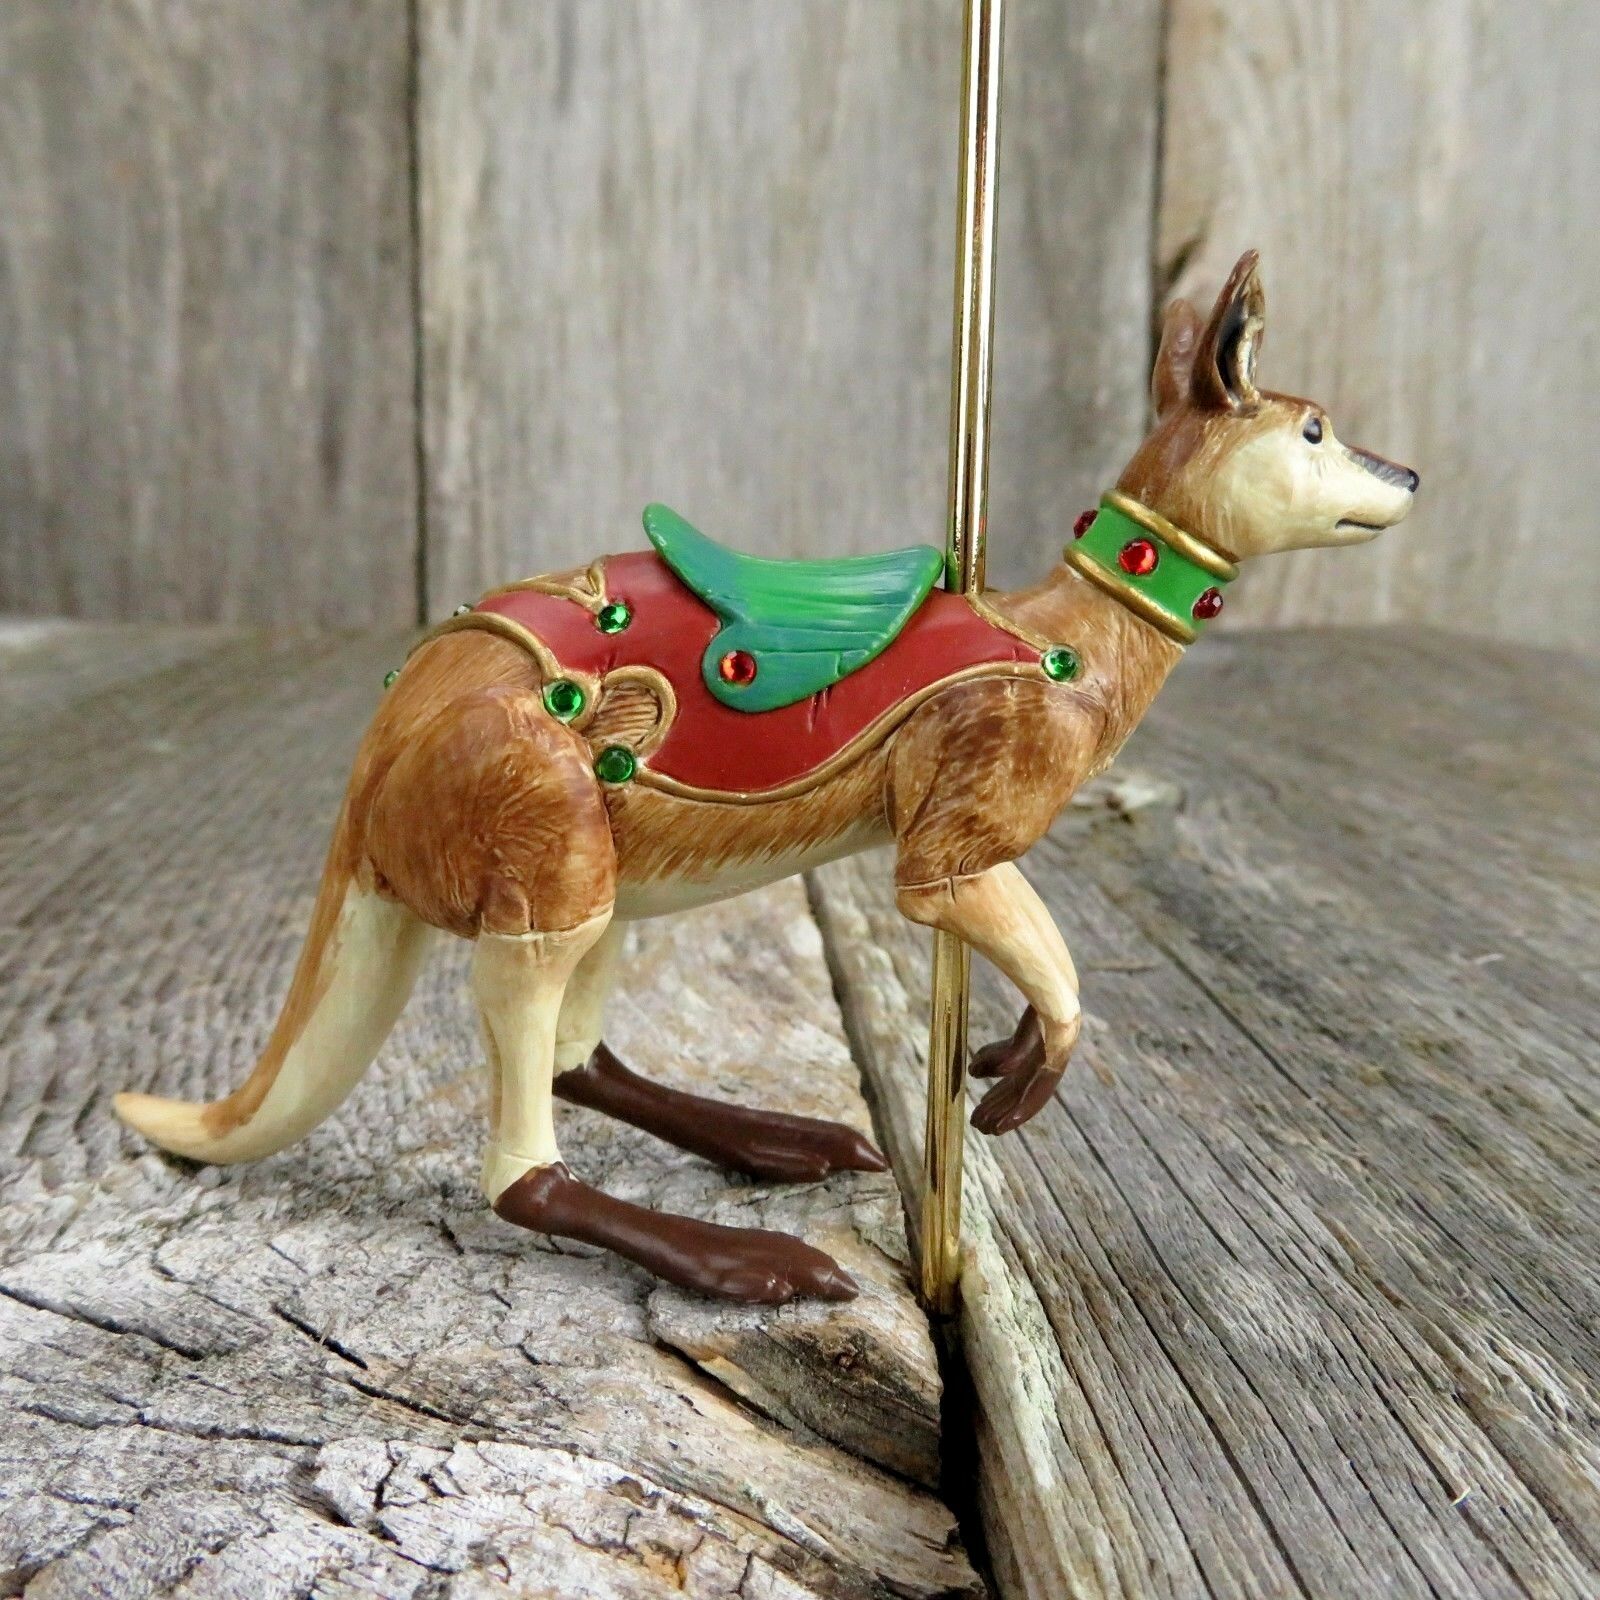 Happy Kangaroo Carousel Ride Hallmark Keepsake Christmas Tree Ornament 2008 - At Grandma's Table